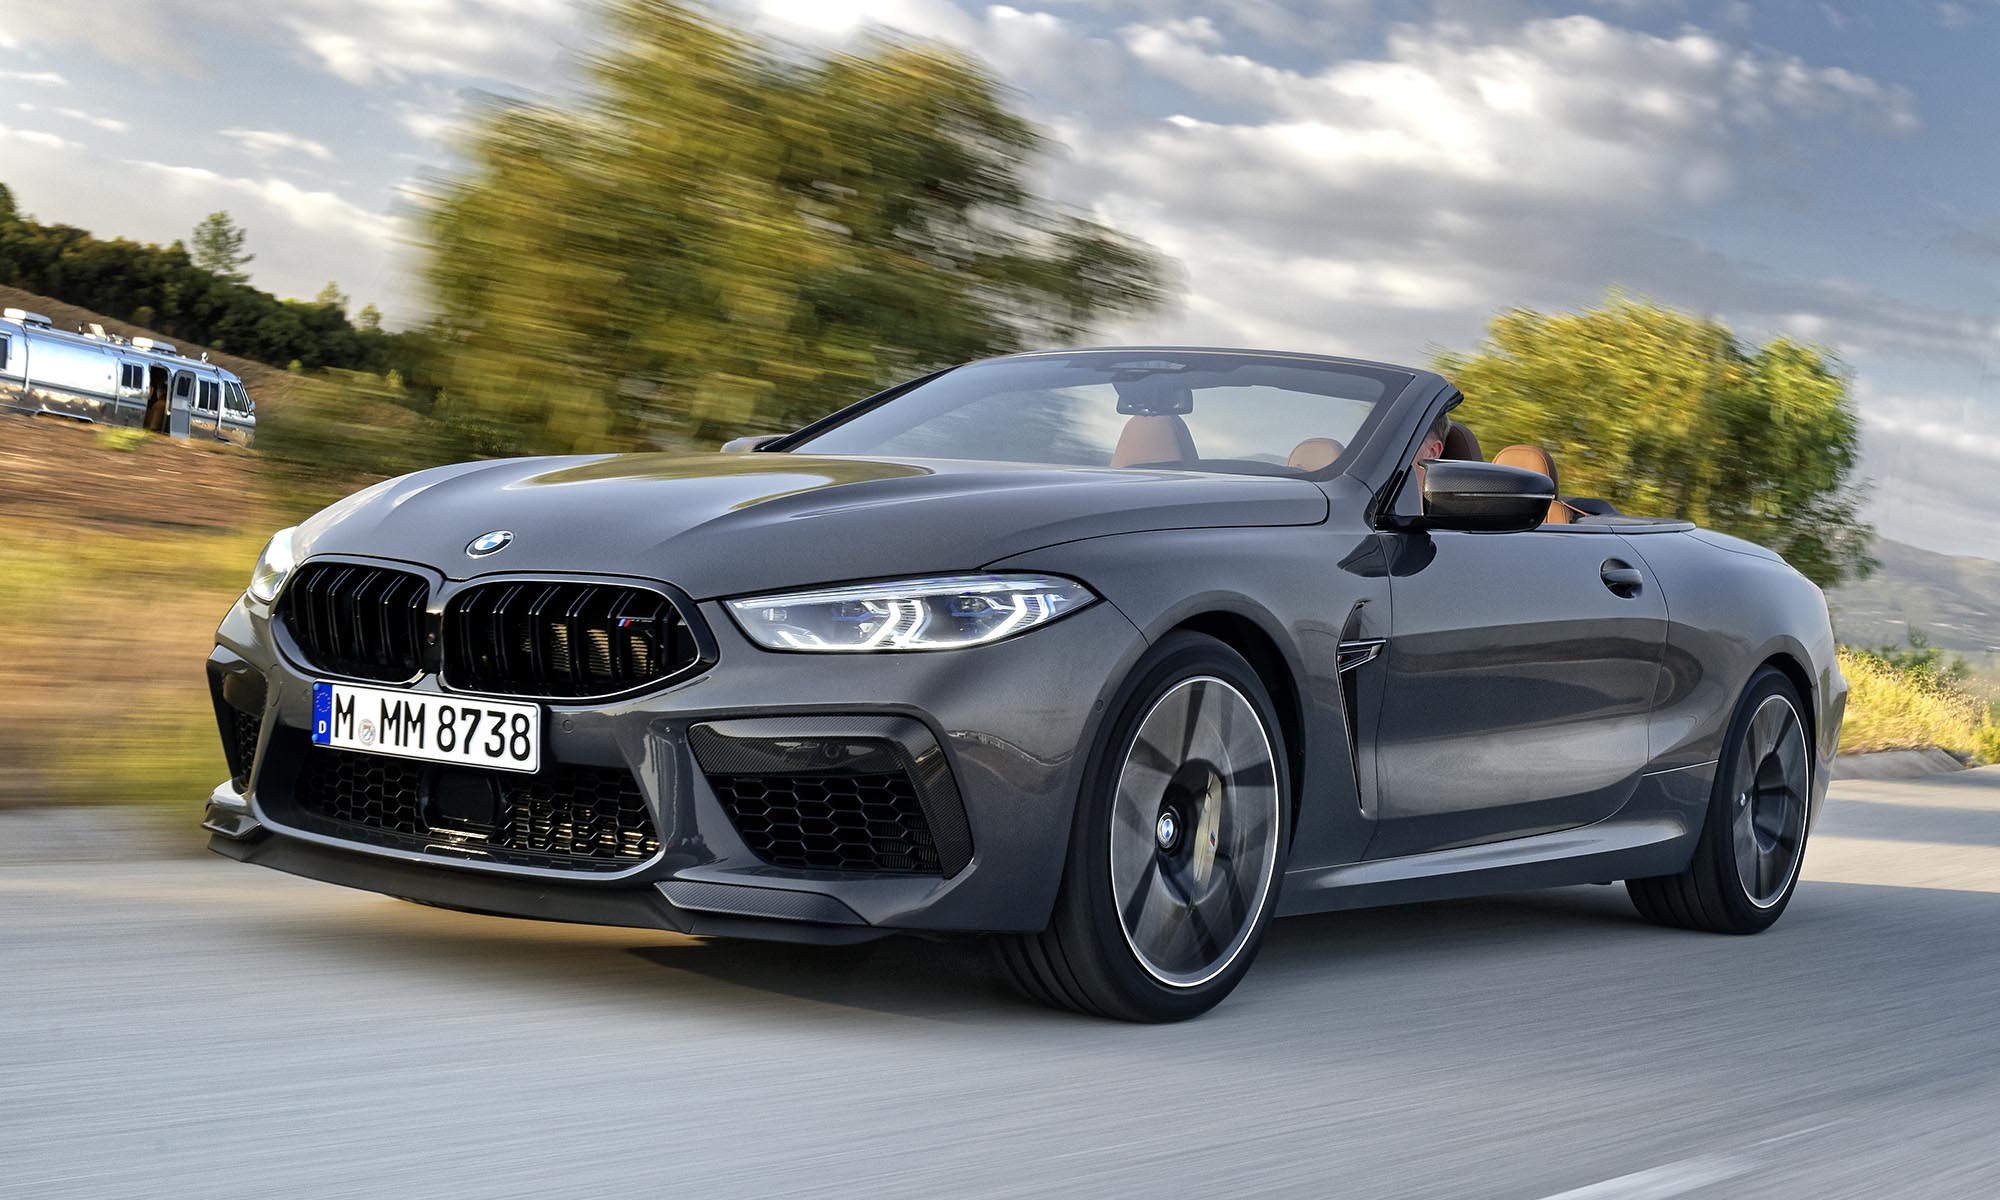 A BMW M8 ilyen könnyen futja meg a 310 km/órát | Az online férfimagazin